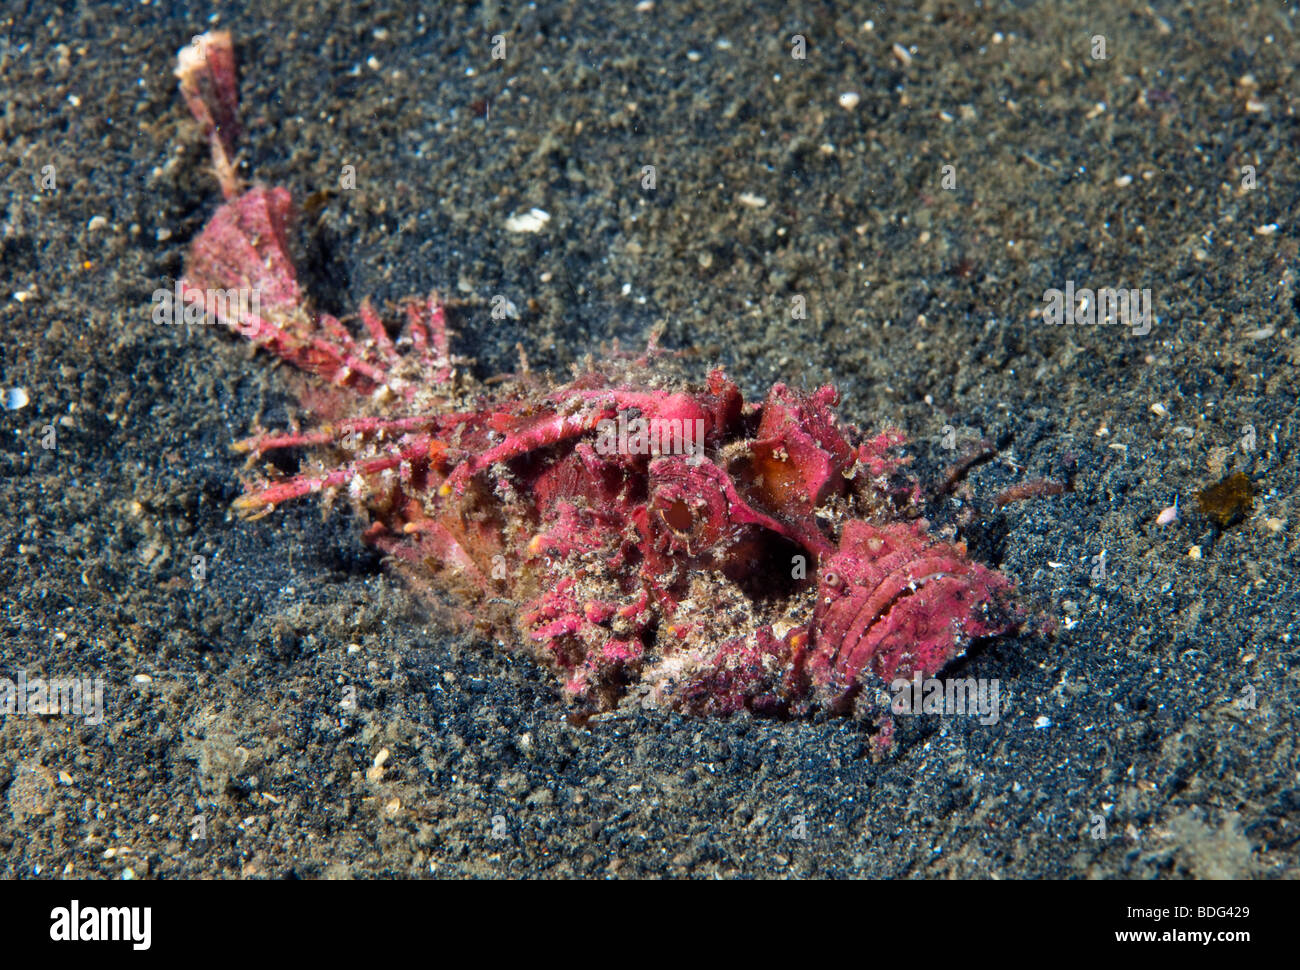 Bärtige Ghul Fisch, stacheligen Devilfish (Inimicus Didactylus), grub in Sand, Lembeh Strait, Sulawesi, Indonesien, Südostasien Stockfoto